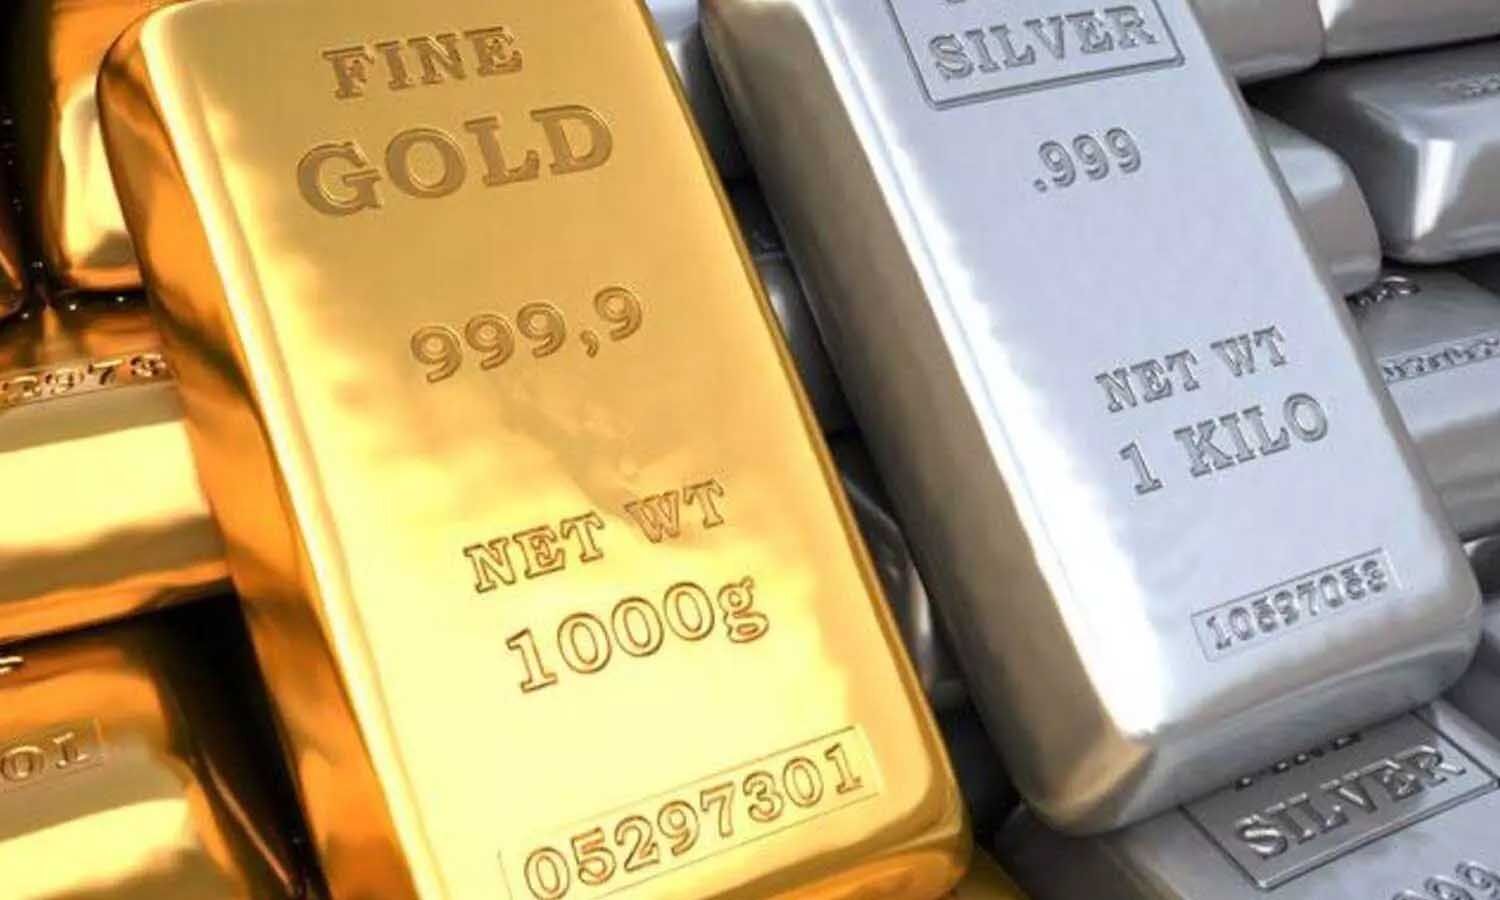 Lucknow Gold Silver Price Today: सोना चांदी की नई कीमतें हुई जारी, लखनऊ सहित कई जिलों में गिरे दाम